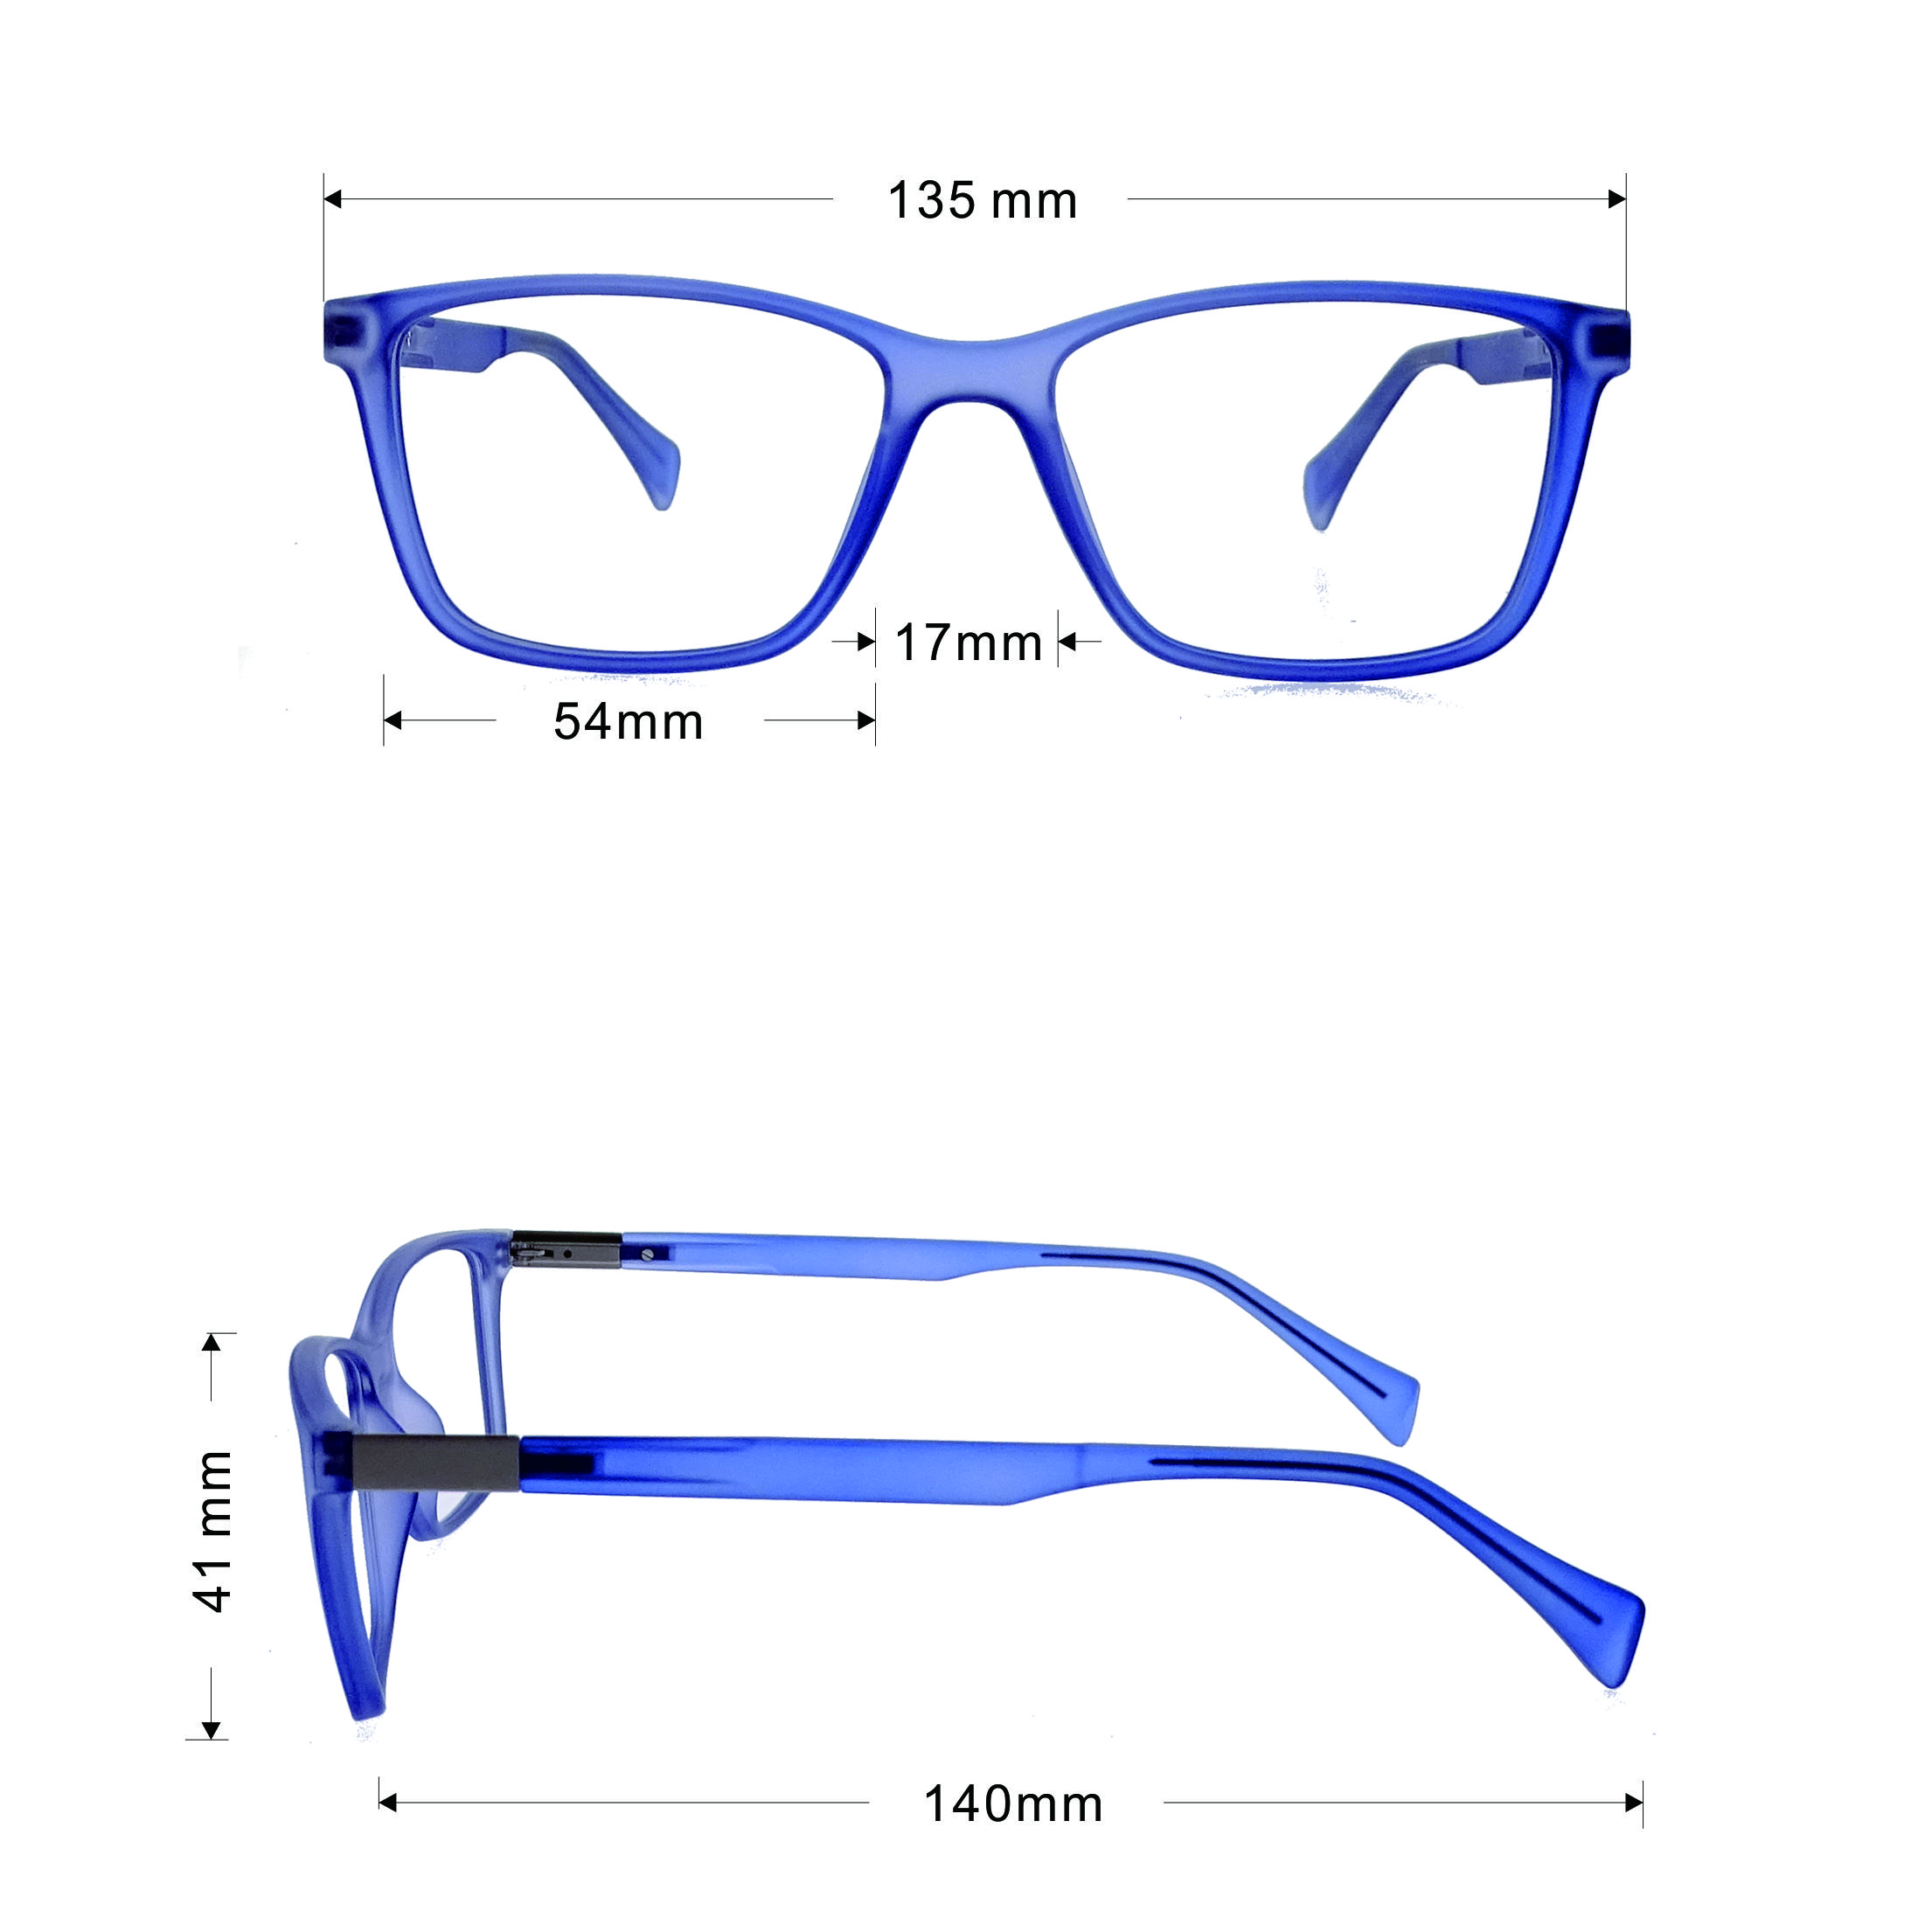 LO ÚLTIMO MODELO DE ESPACIAL DE ESPACIALES TR Eyewear de marco óptico LO-OT474